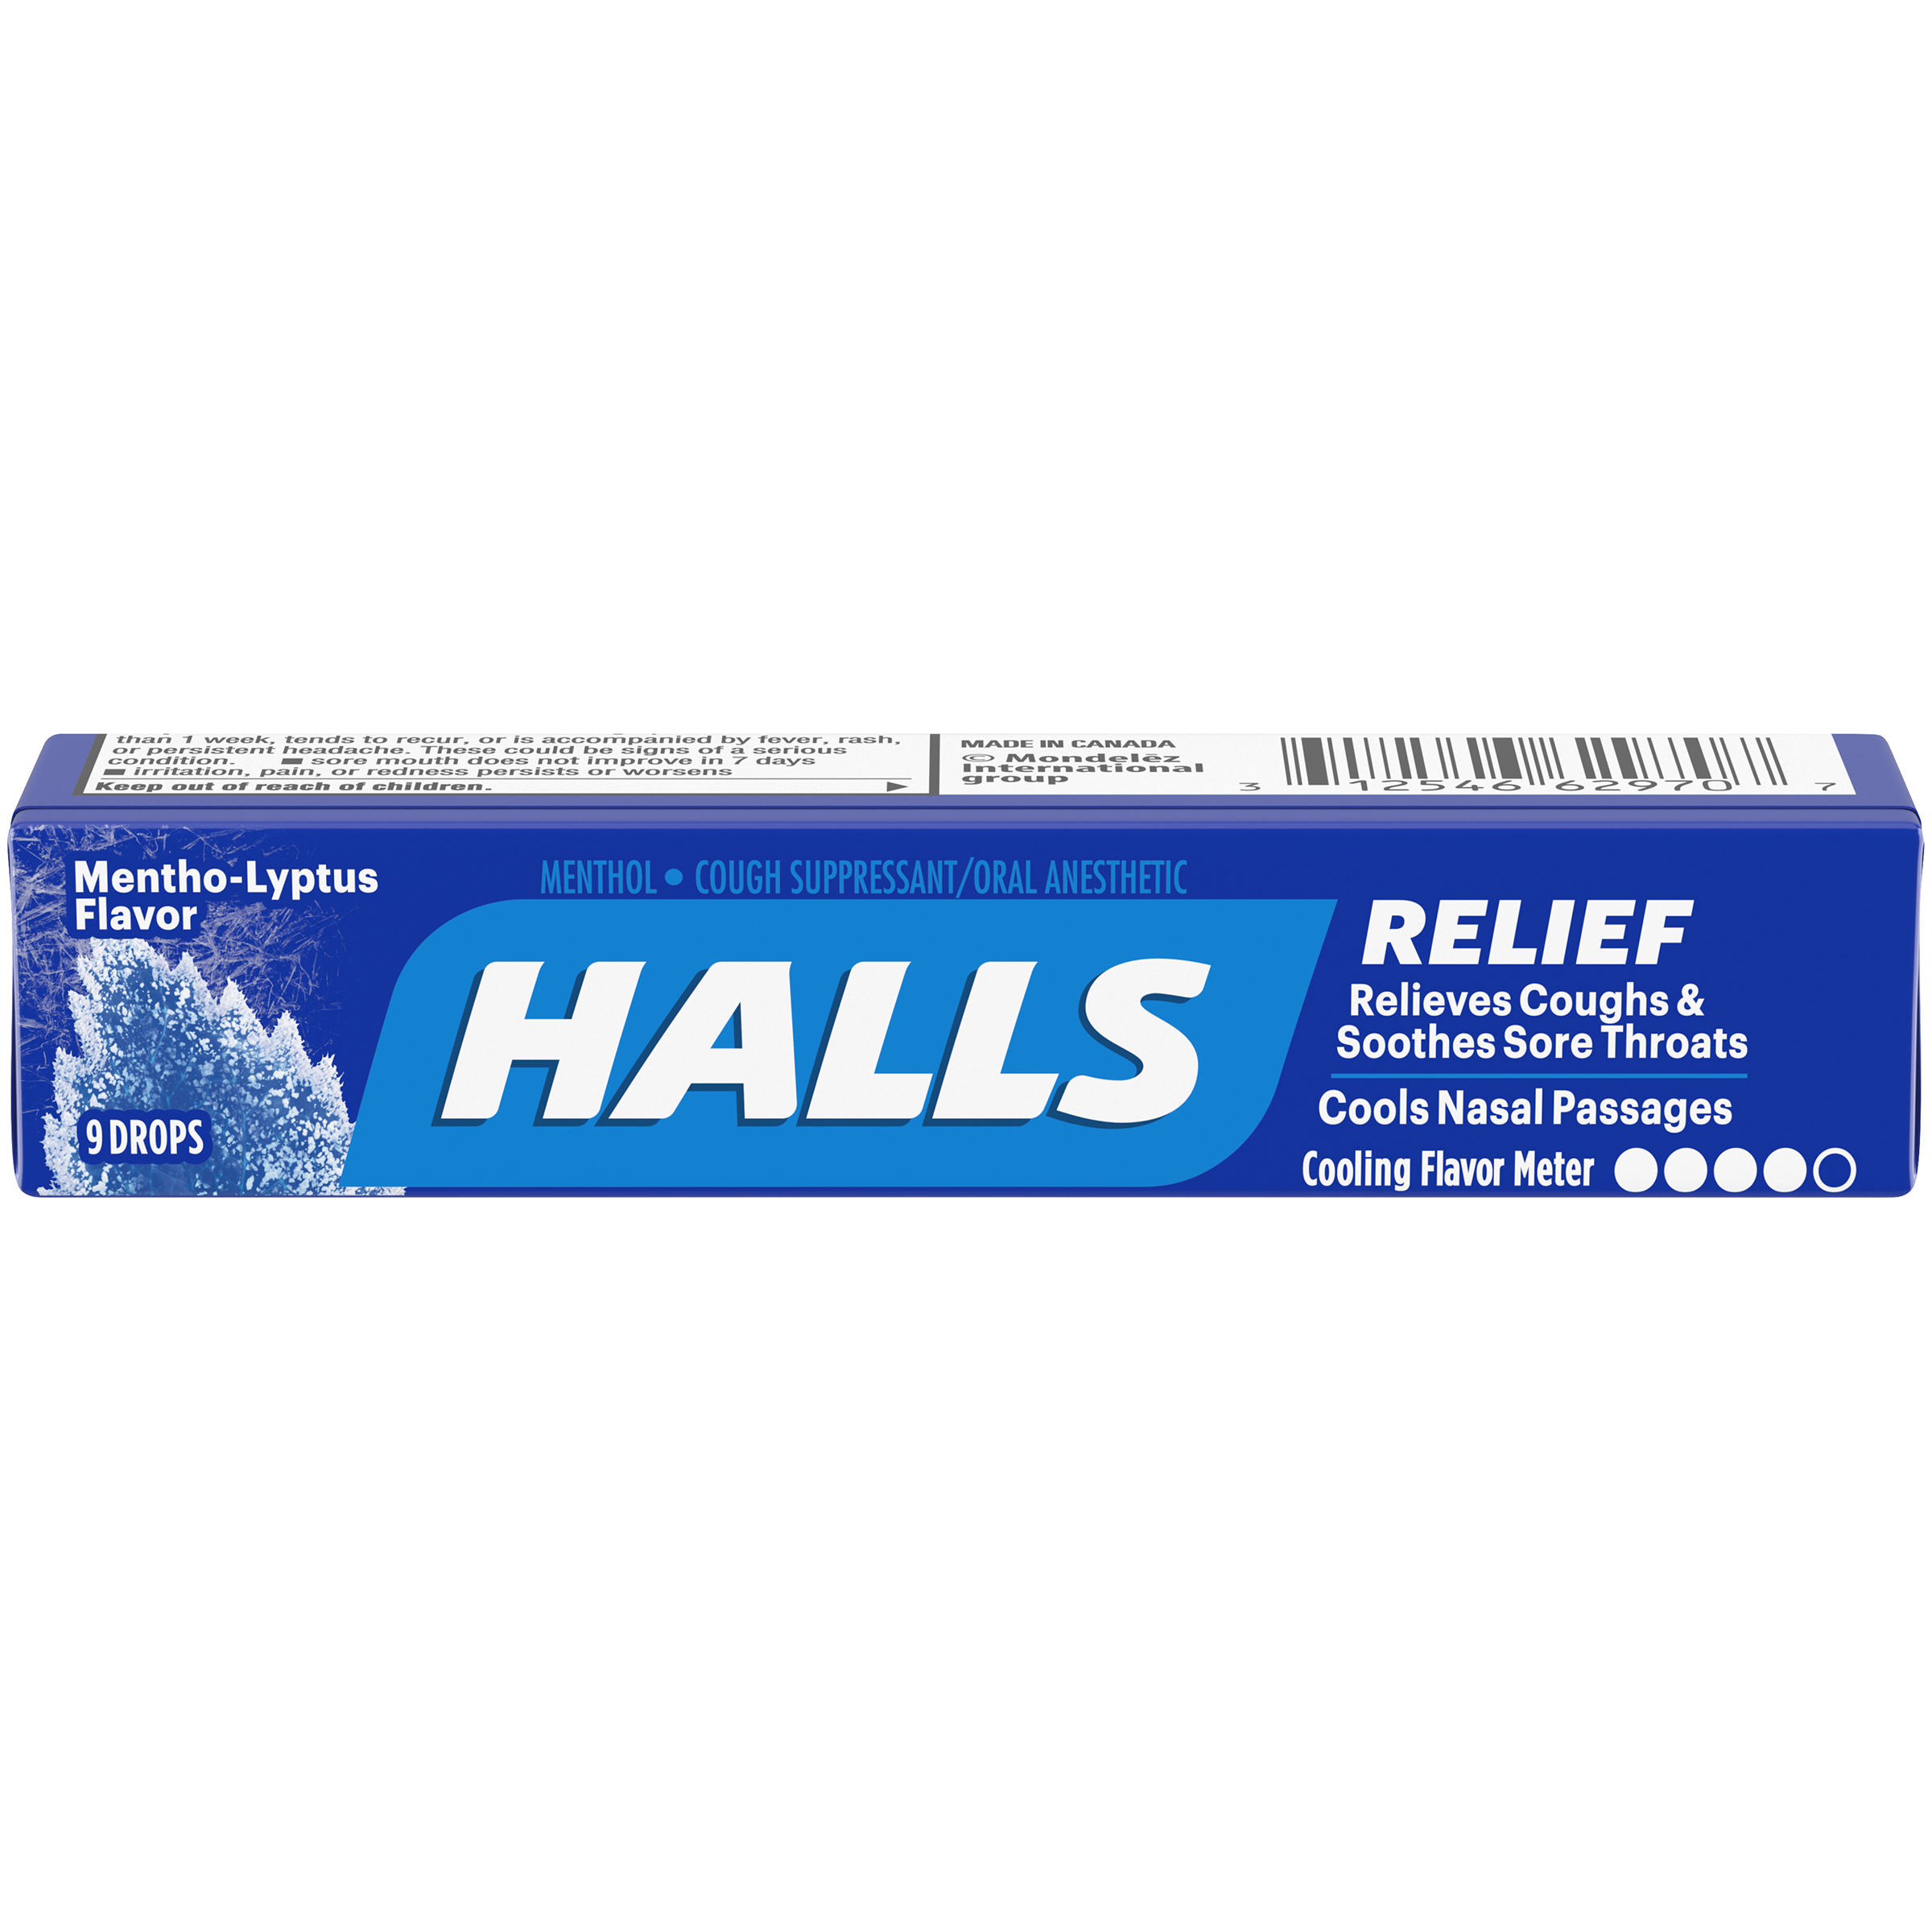 HALLS Mentho-Lyptus Flavor Cough Drops Stick 9PCS 24x20